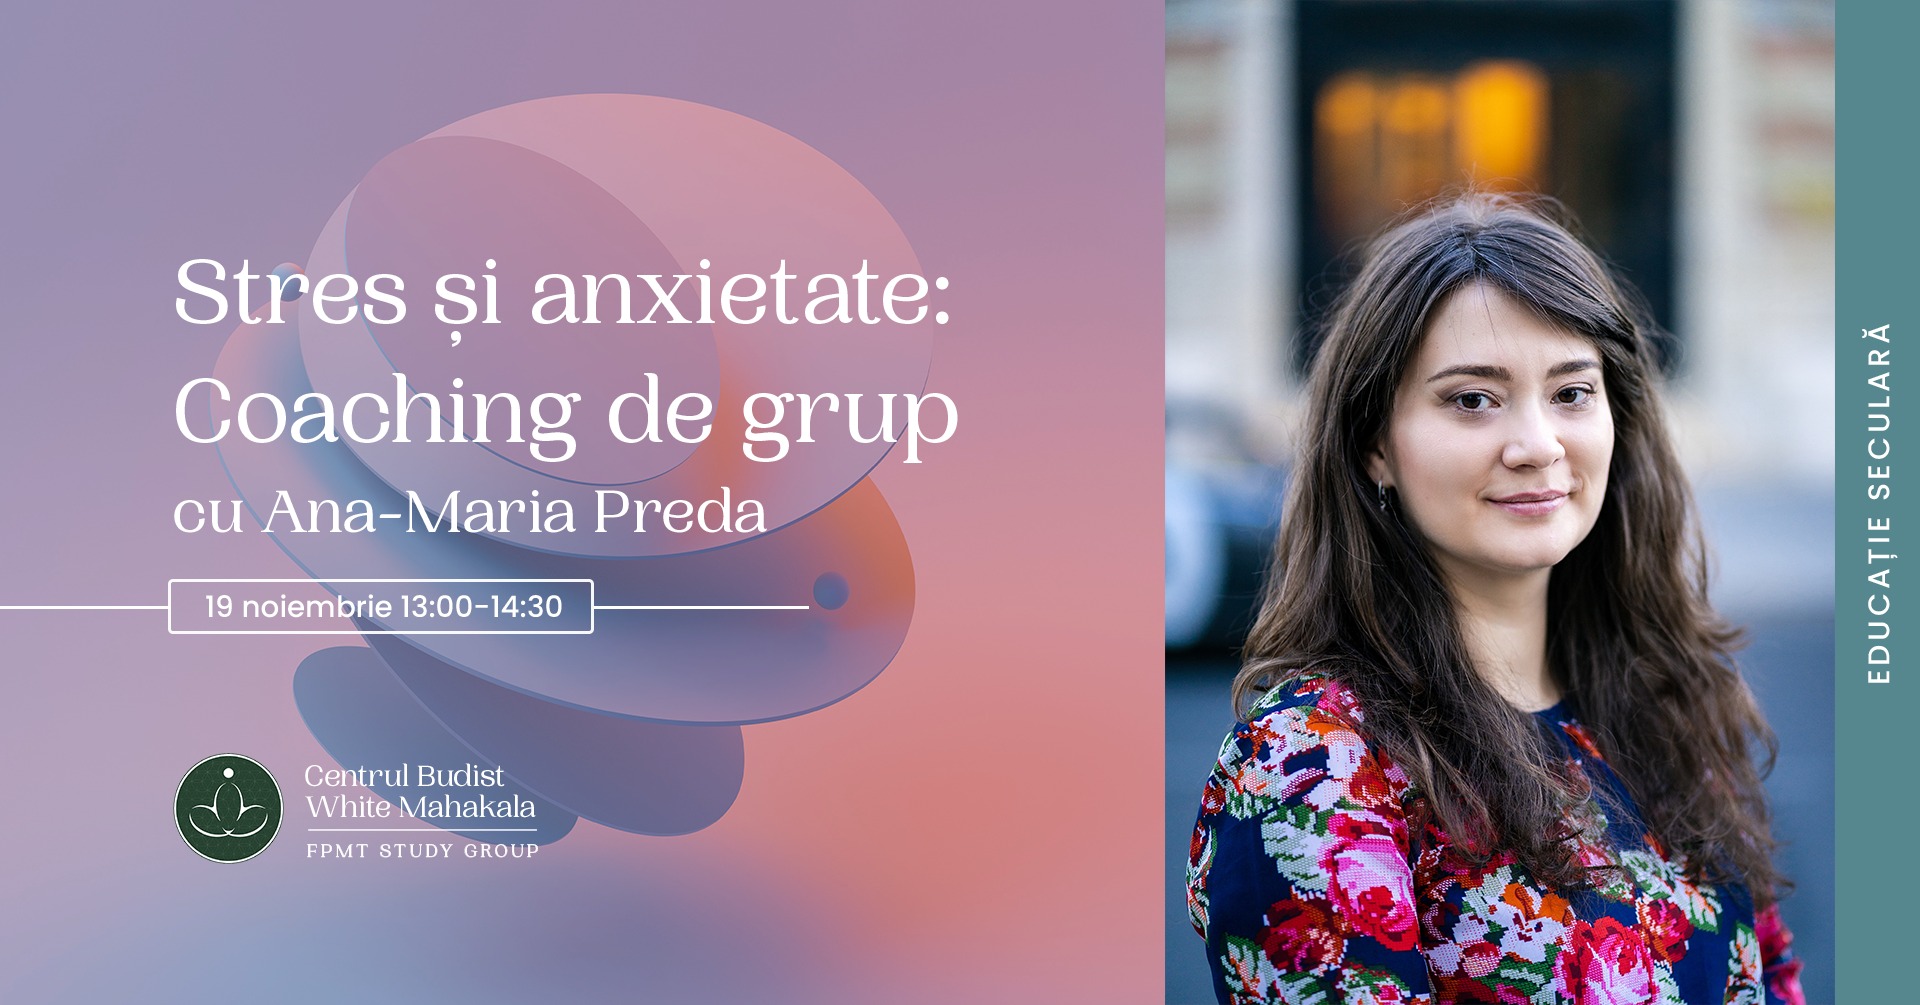 Stres și anxietate: coaching de grup cu Ana-Maria Preda